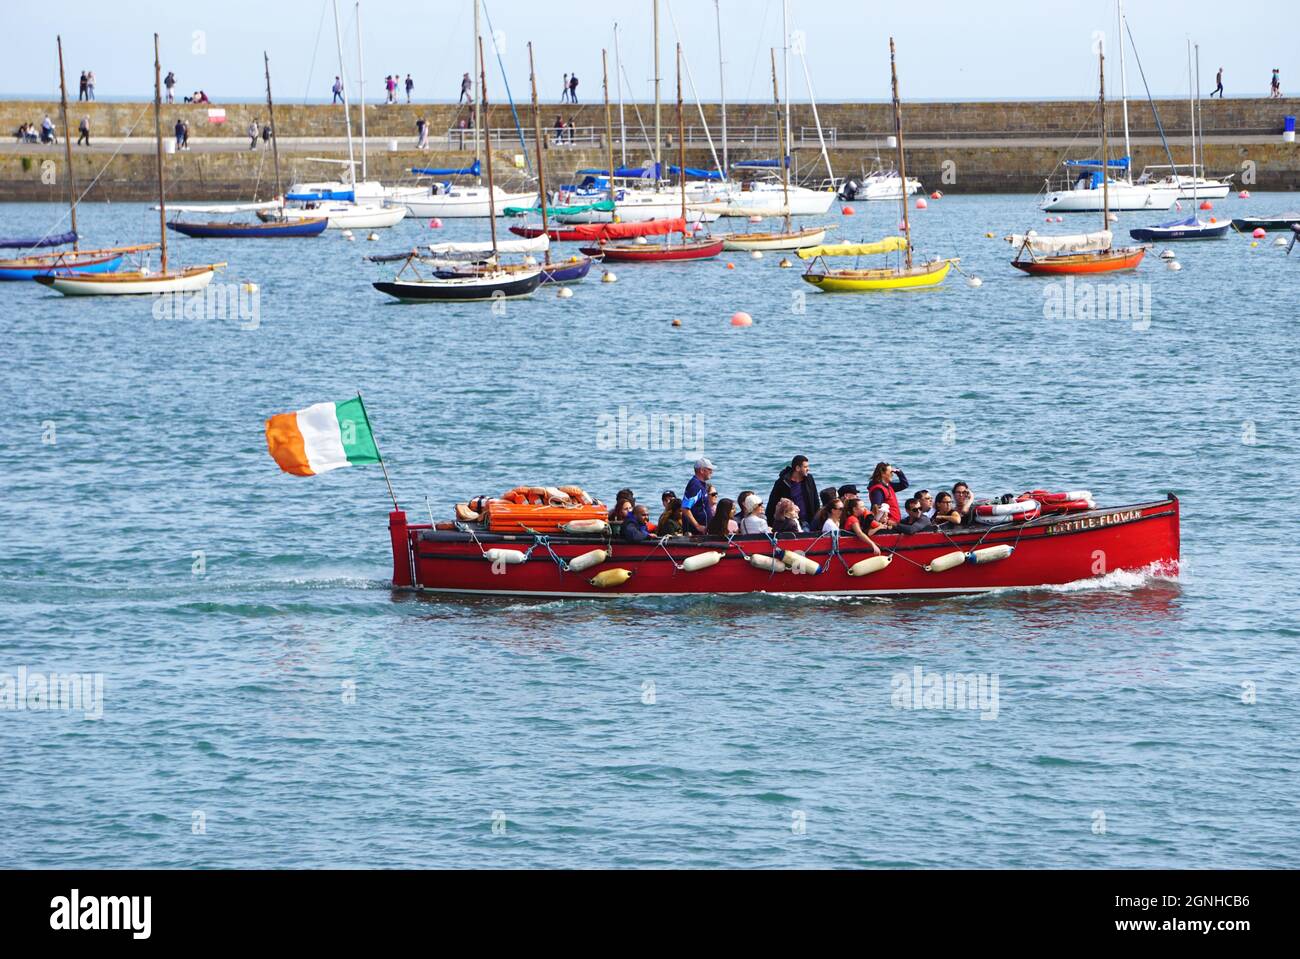 Un bateau rouge vif qui vole le drapeau de l'Irlande passe devant une  flotte de voiliers colorés amarrés à l'intérieur de la digue du village de  Howth, en Irlande Photo Stock -